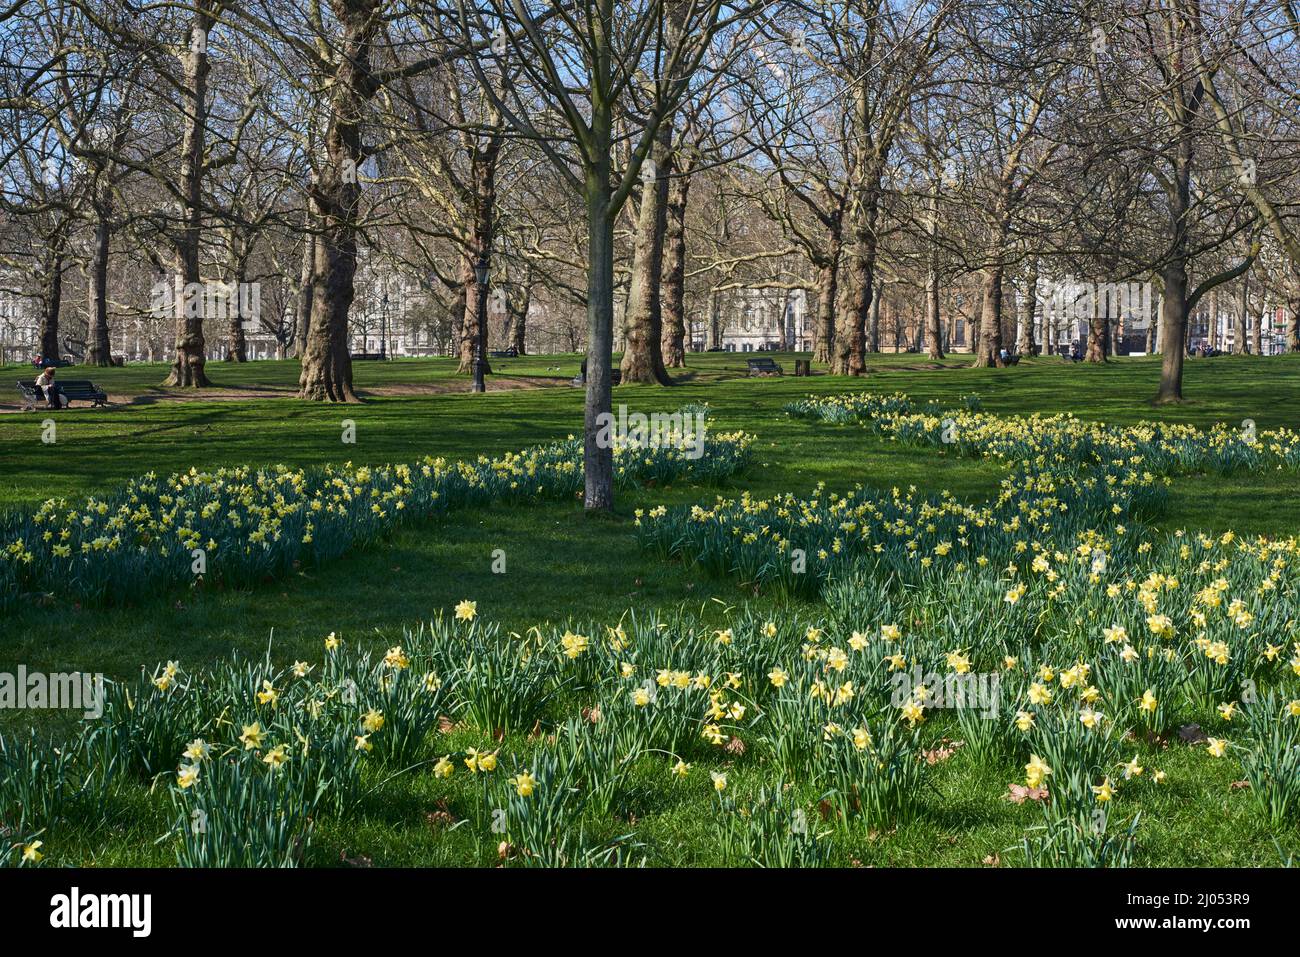 Daffodils in springtime in Green Park, central London UK Stock Photo